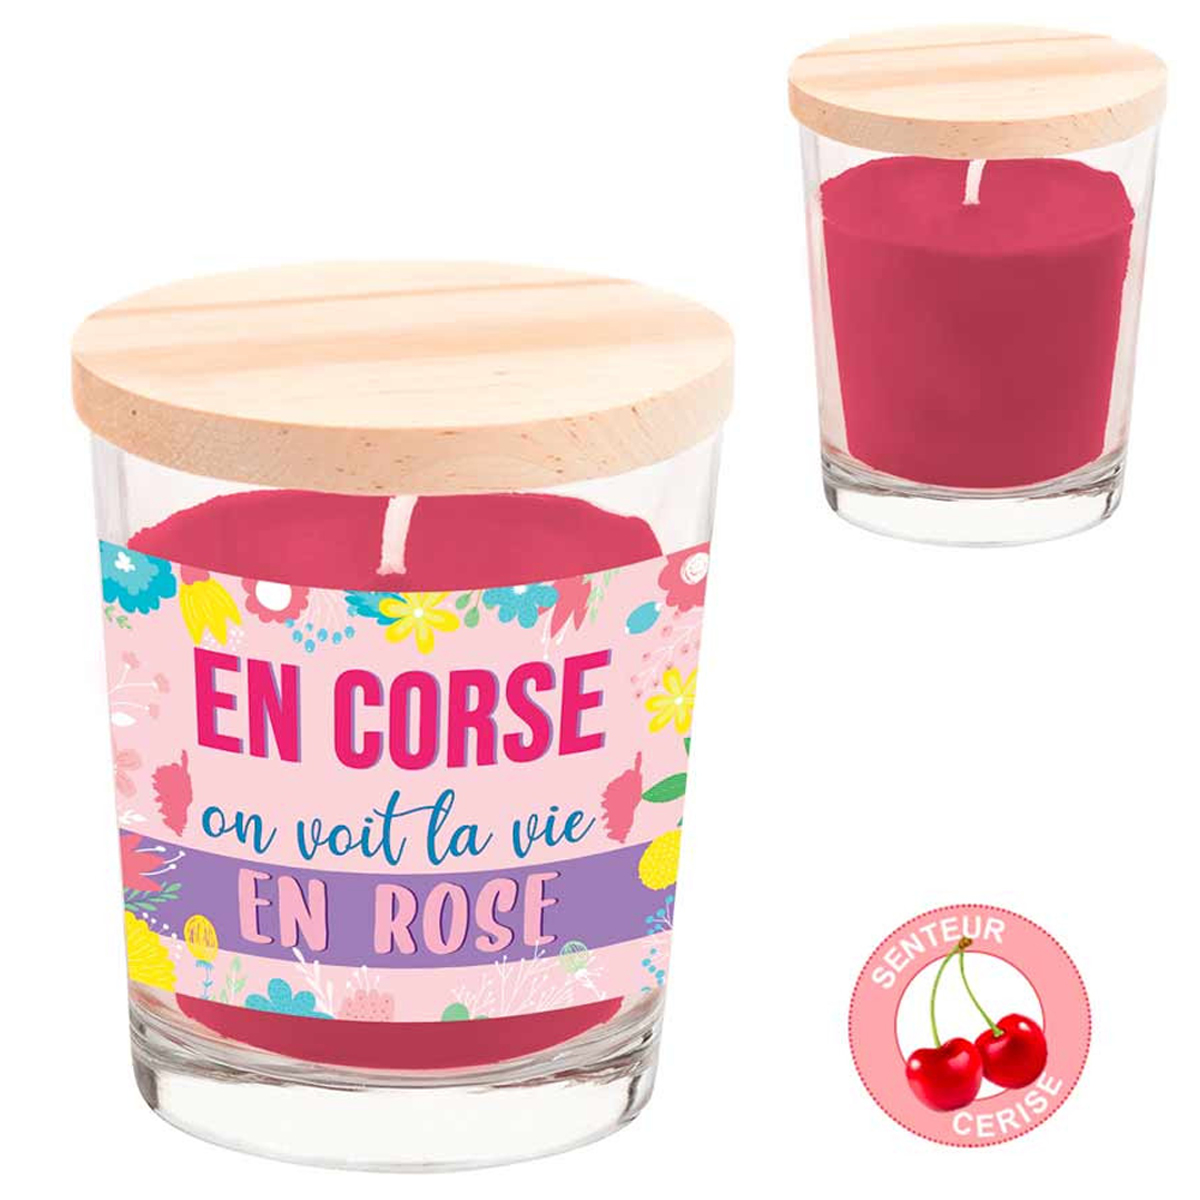 Bougie parfumée \'Corsica\' (En Corse, on voit la vie en rose - cerise) - 92x70 mm - [A0694]